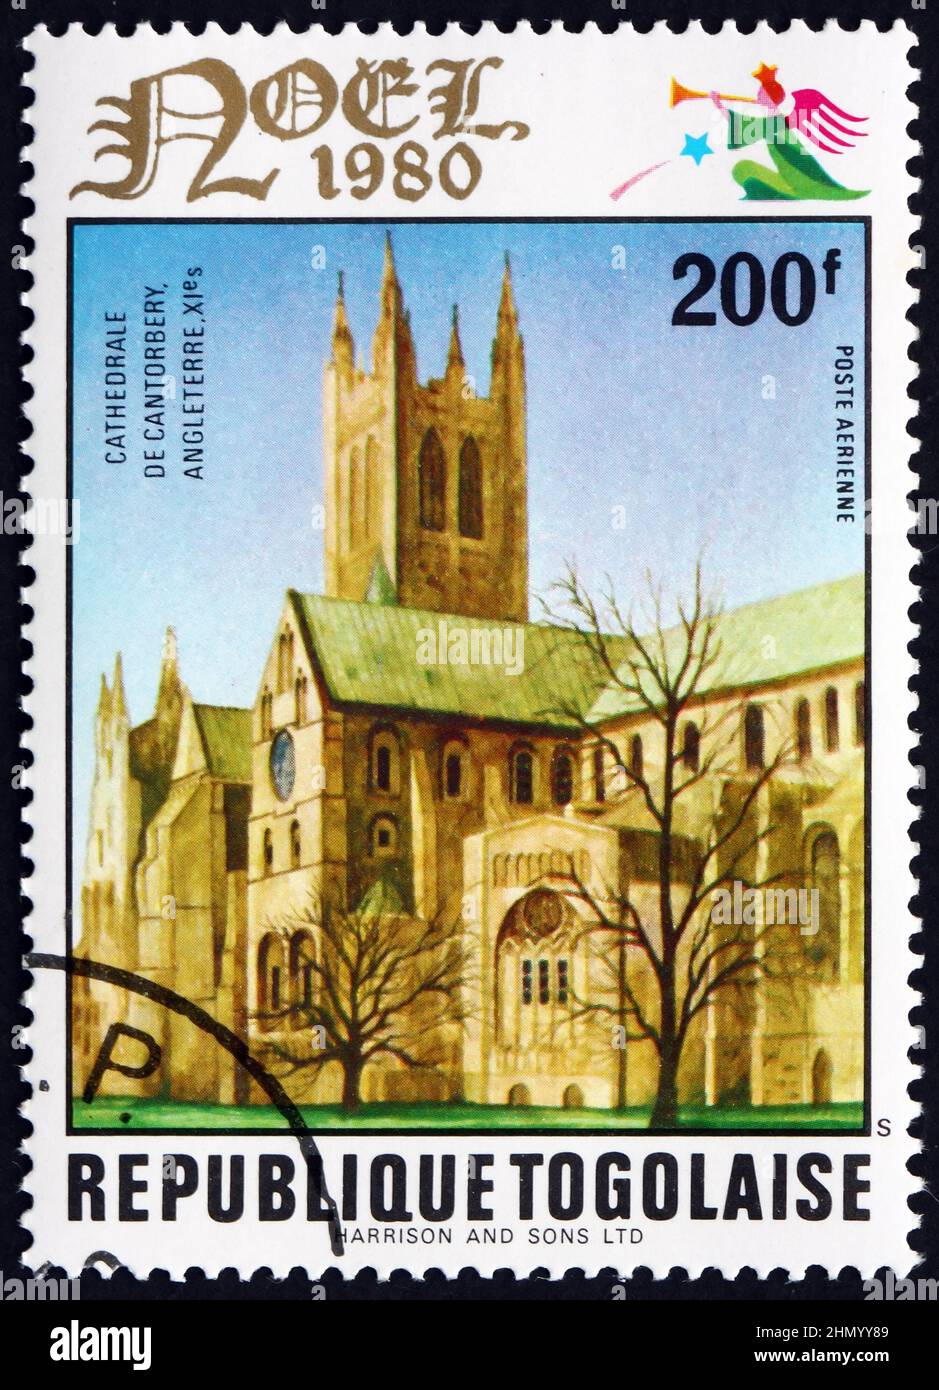 TOGO - UM 1980: Eine in Togo gedruckte Briefmarke zeigt die Kathedrale von Canterbury, England, um 1980 Stockfoto